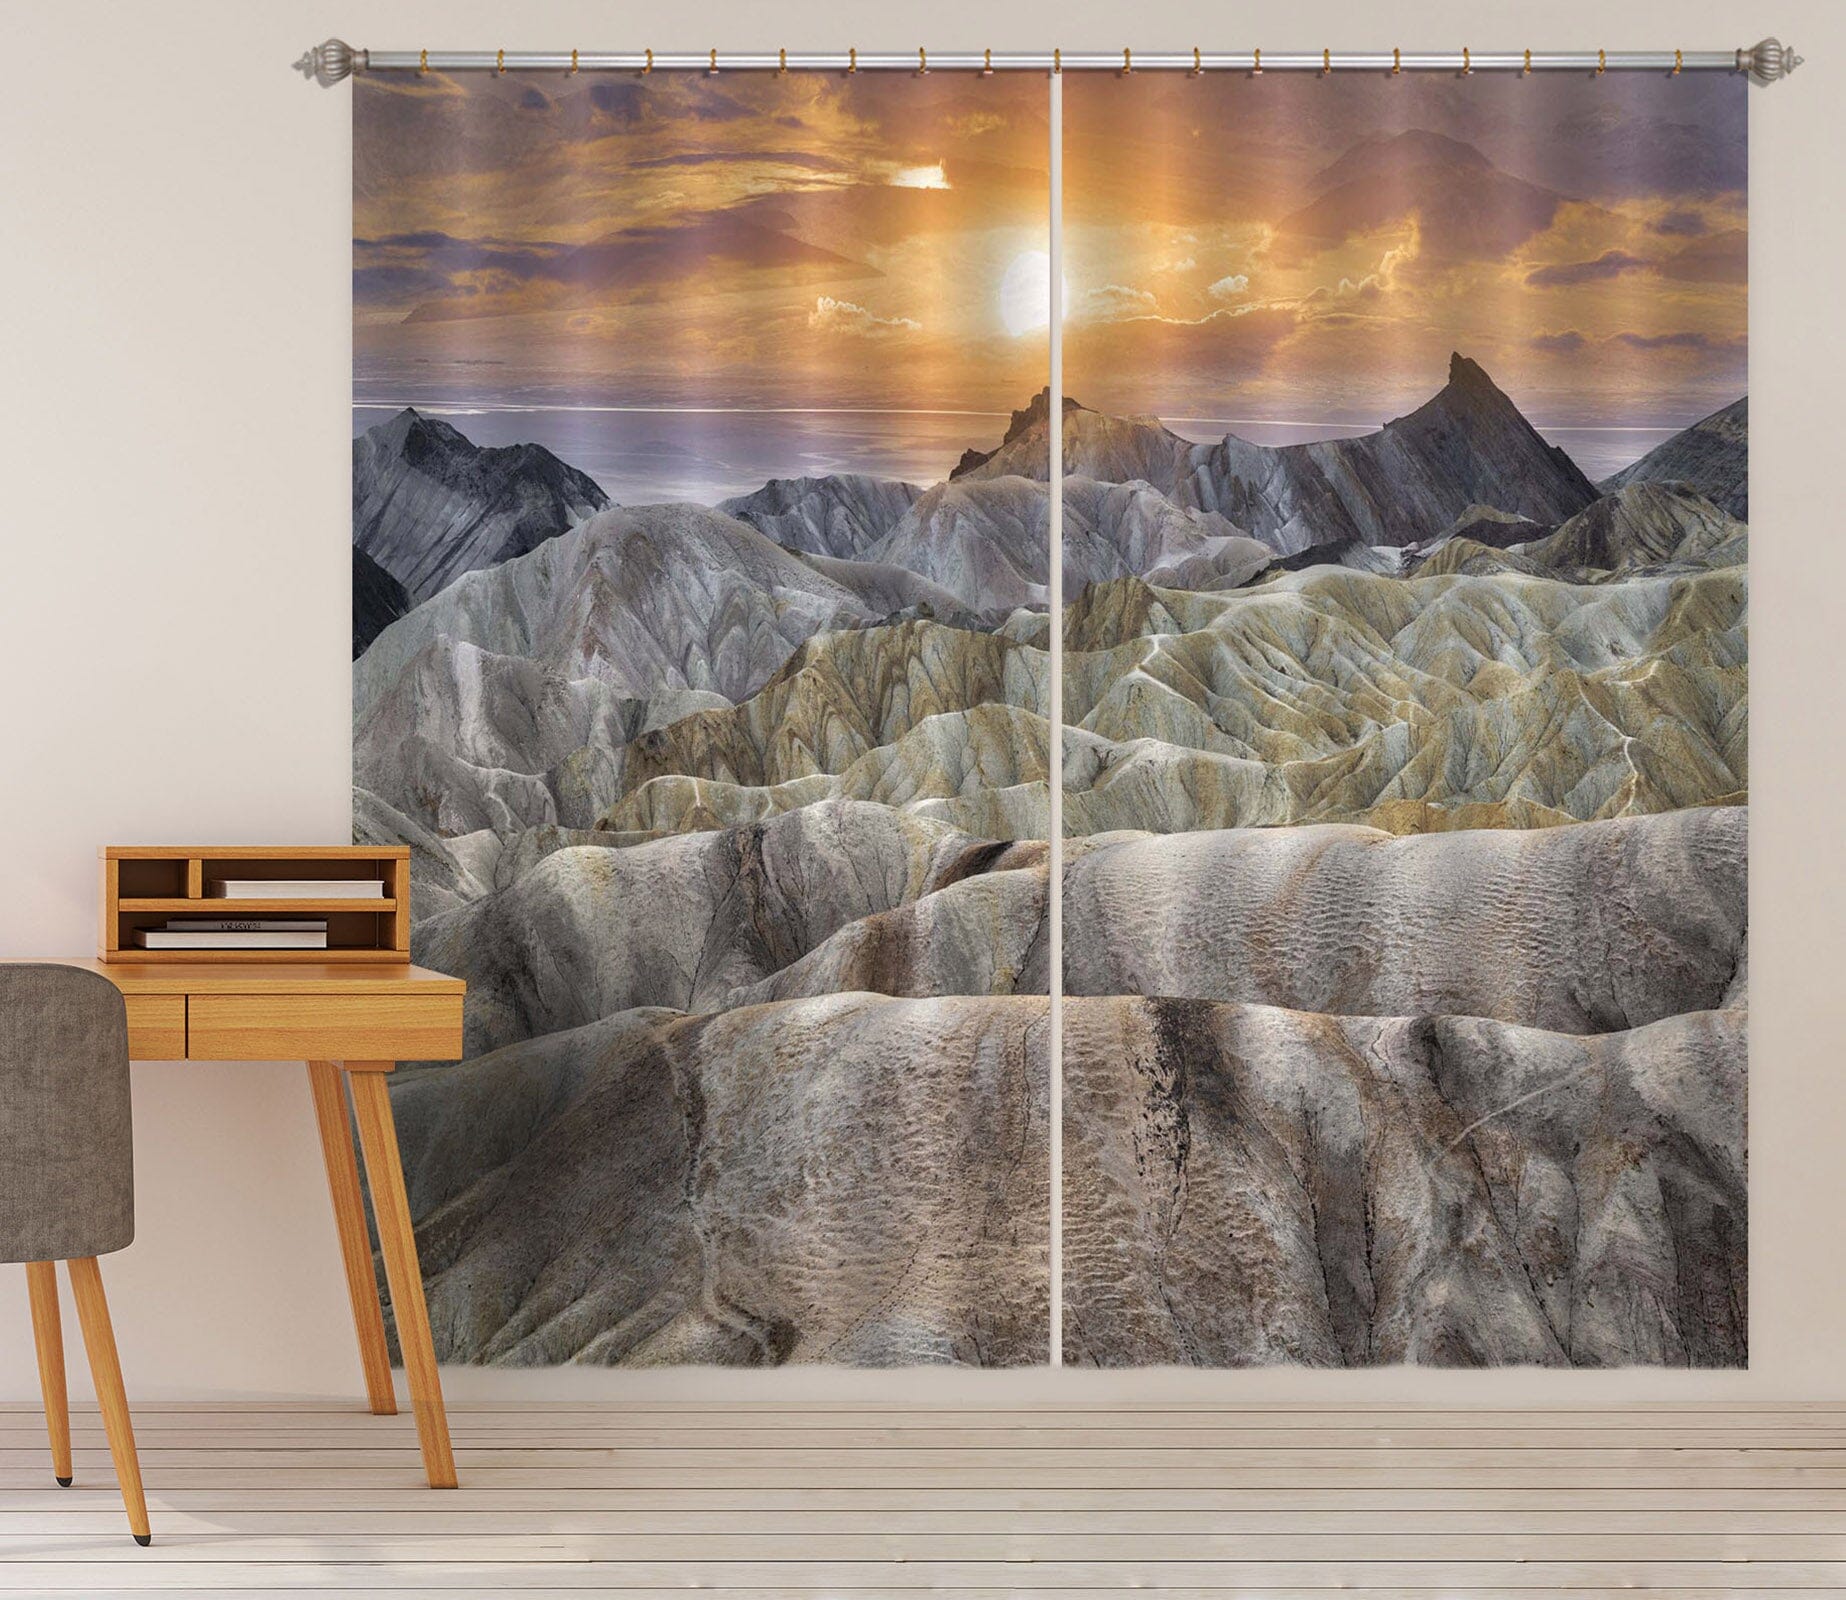 3D White Mountain Peak 196 Marco Carmassi Curtain Curtains Drapes Curtains AJ Creativity Home 